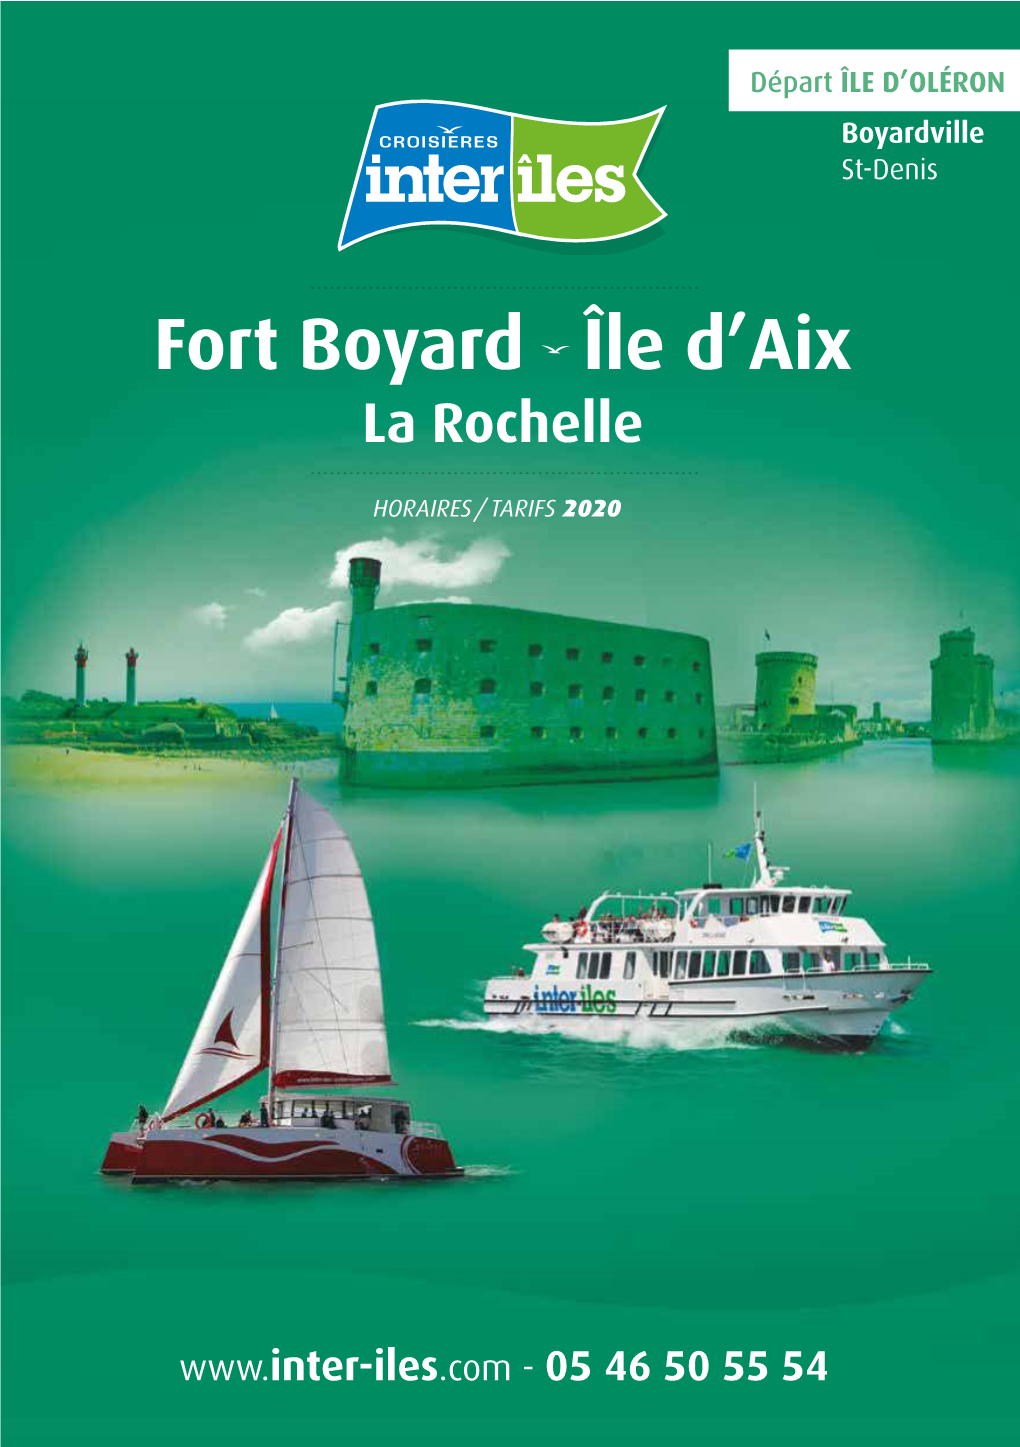 Fort Boyard Île D'aix